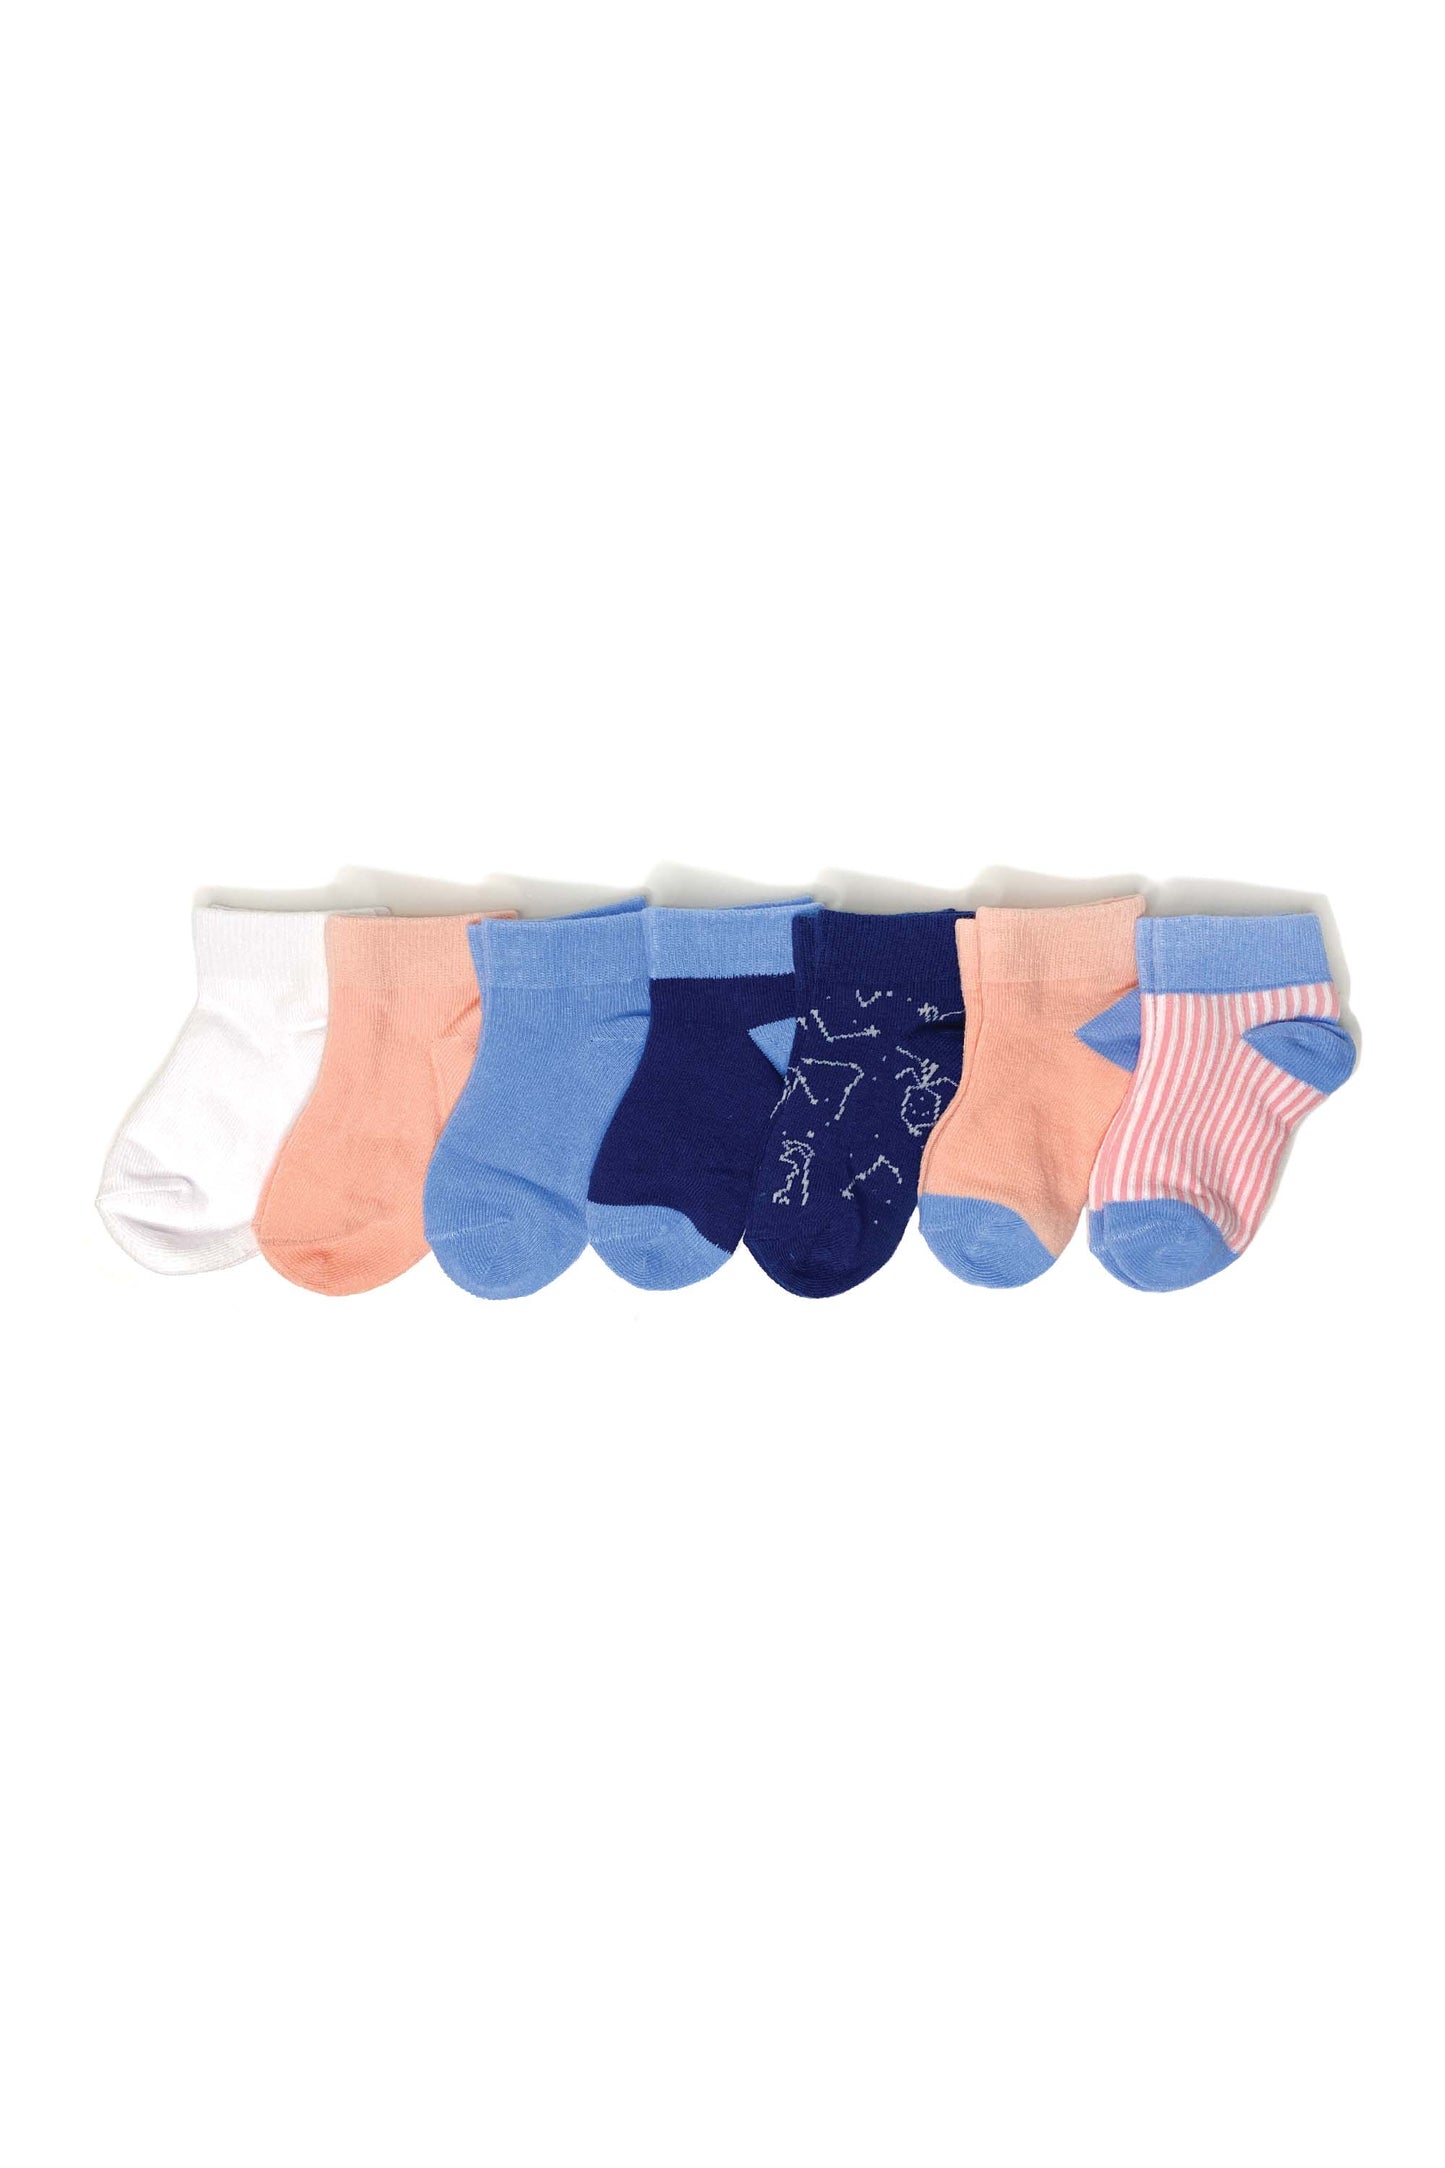 Caja de calcetines para bebé| Paquete de 7